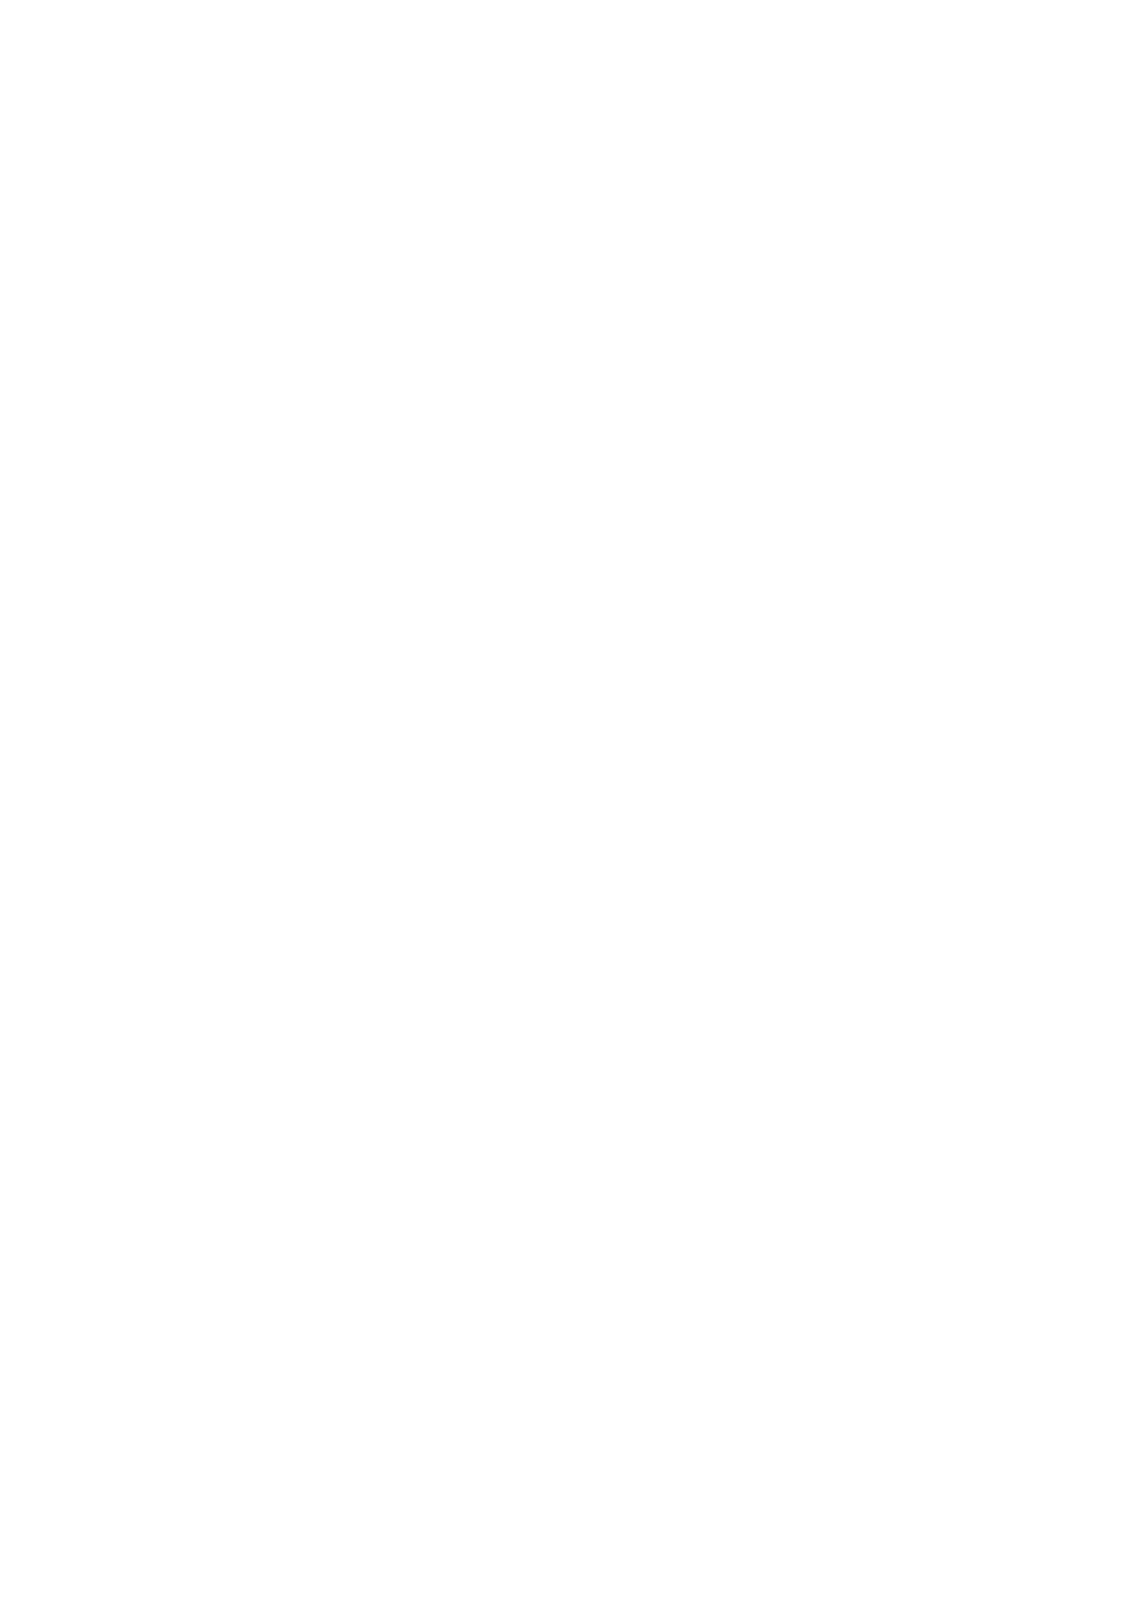 浜崎あゆみ、2020年の幕開けを“約束の地”で迎えたカウントダウン・ライヴDVD & Blu-ray発売決定サムネイル画像!